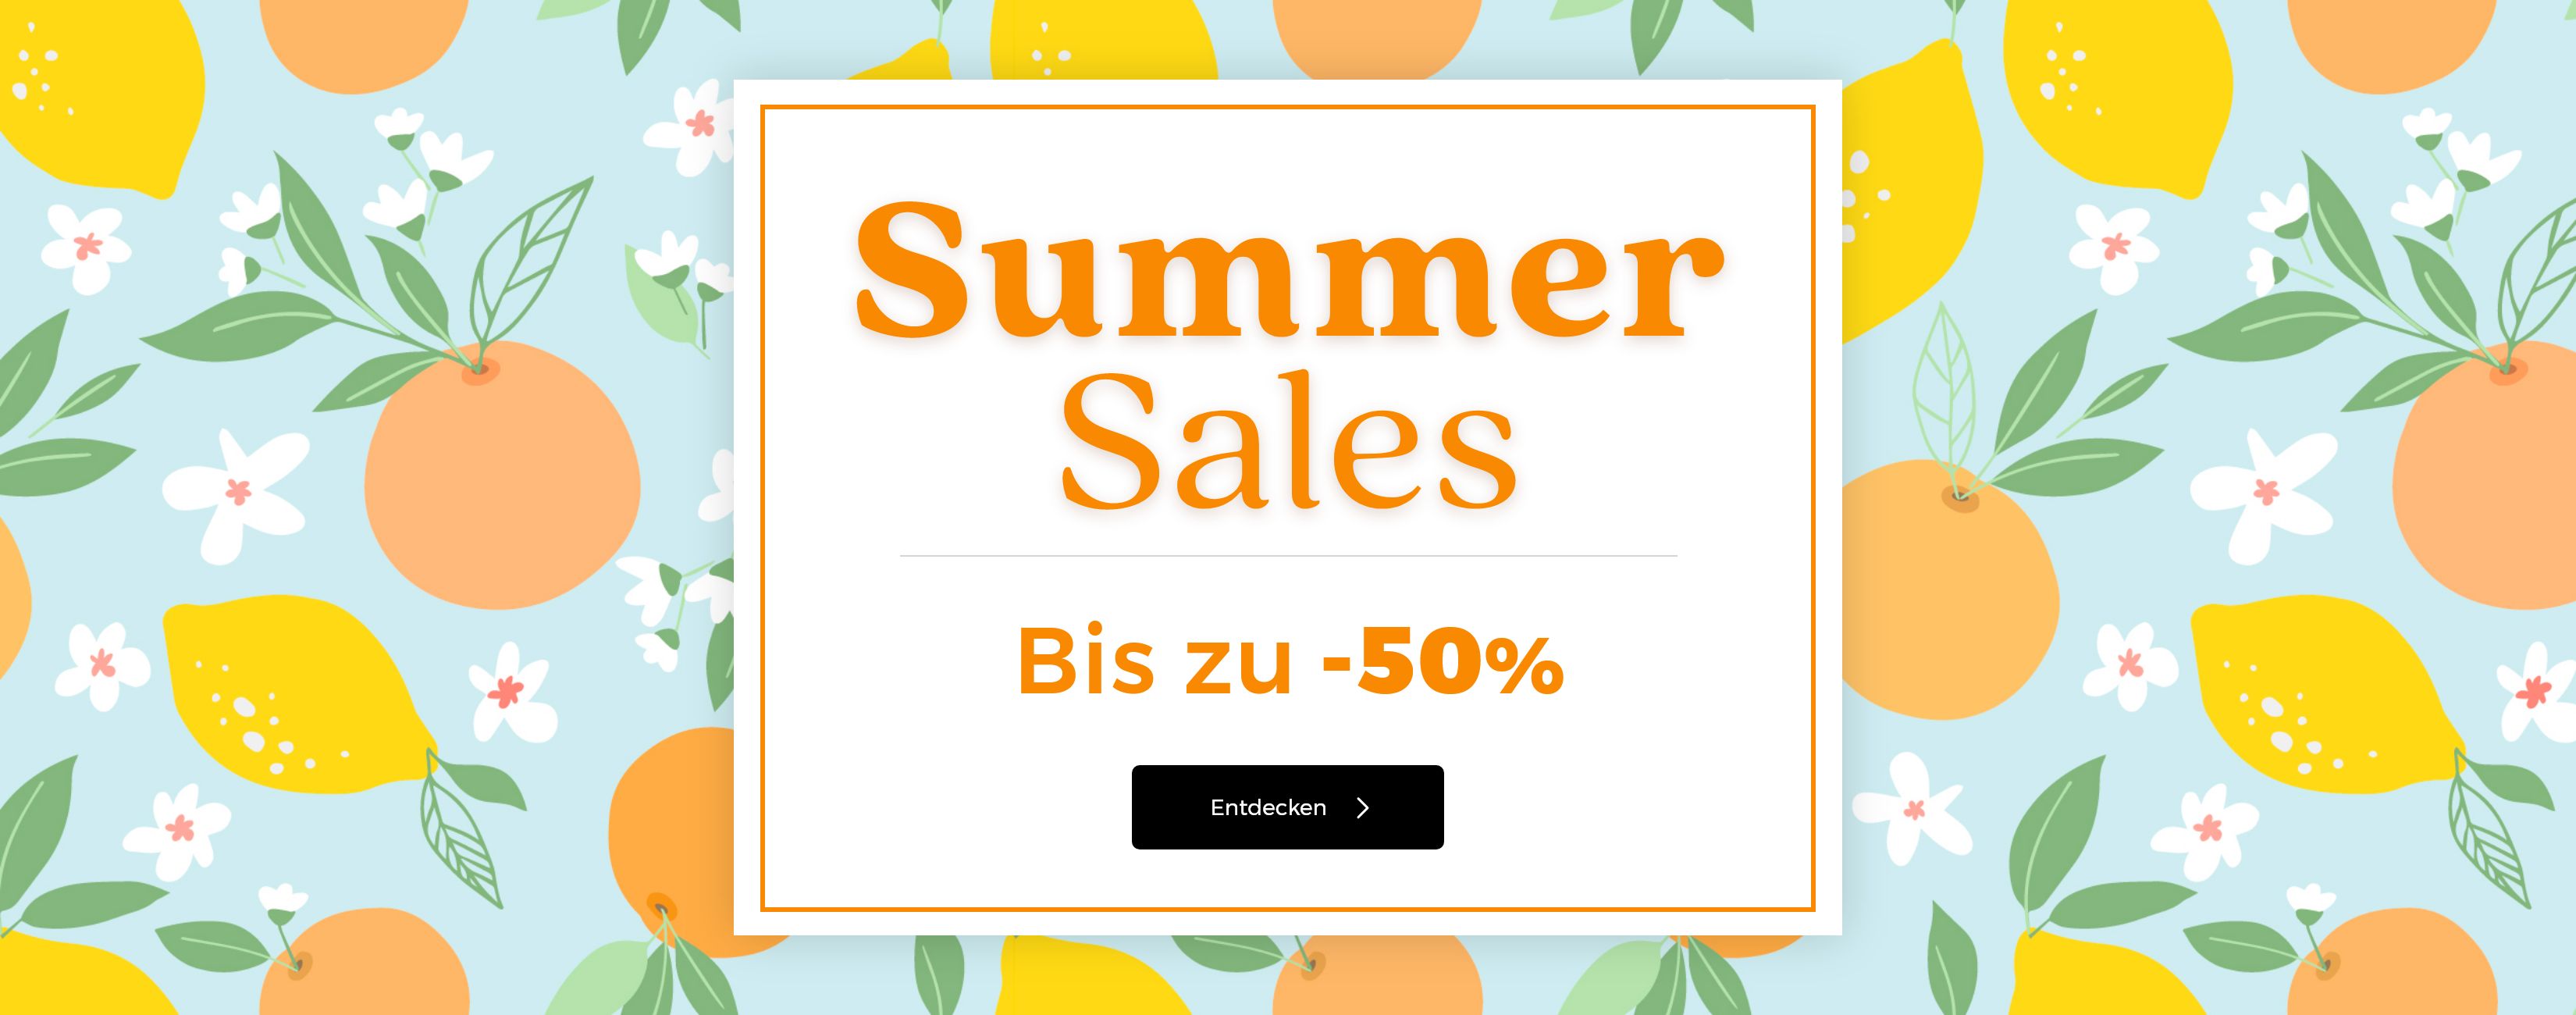 SUMMER SALES BIS ZU -50% ENDET AM 31.07